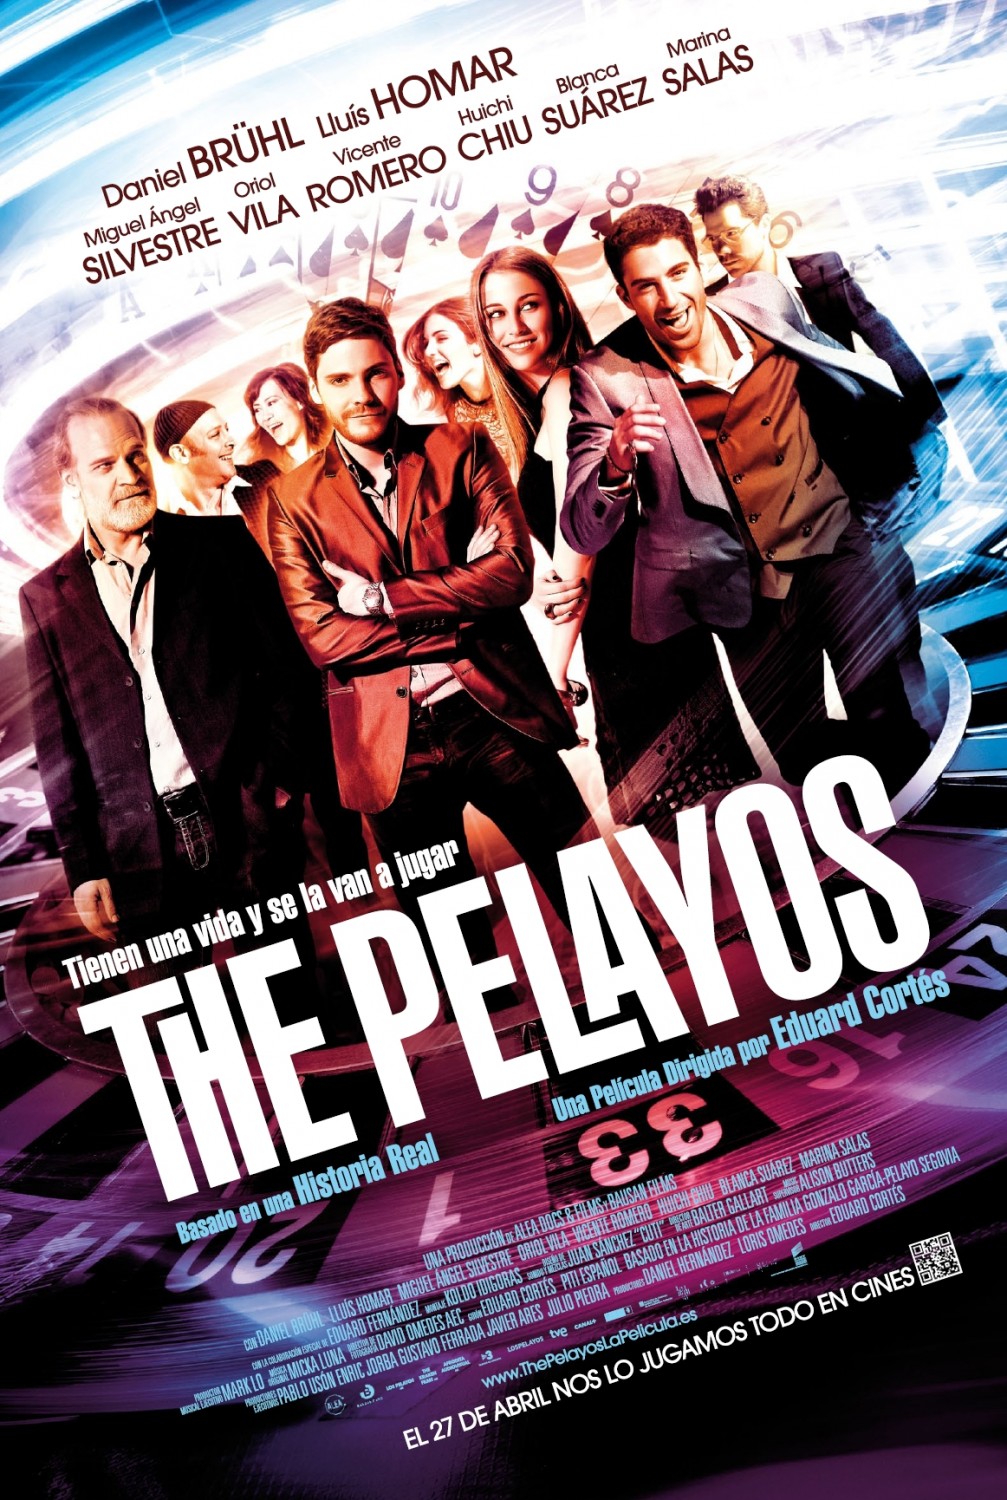 The Pelayos movie